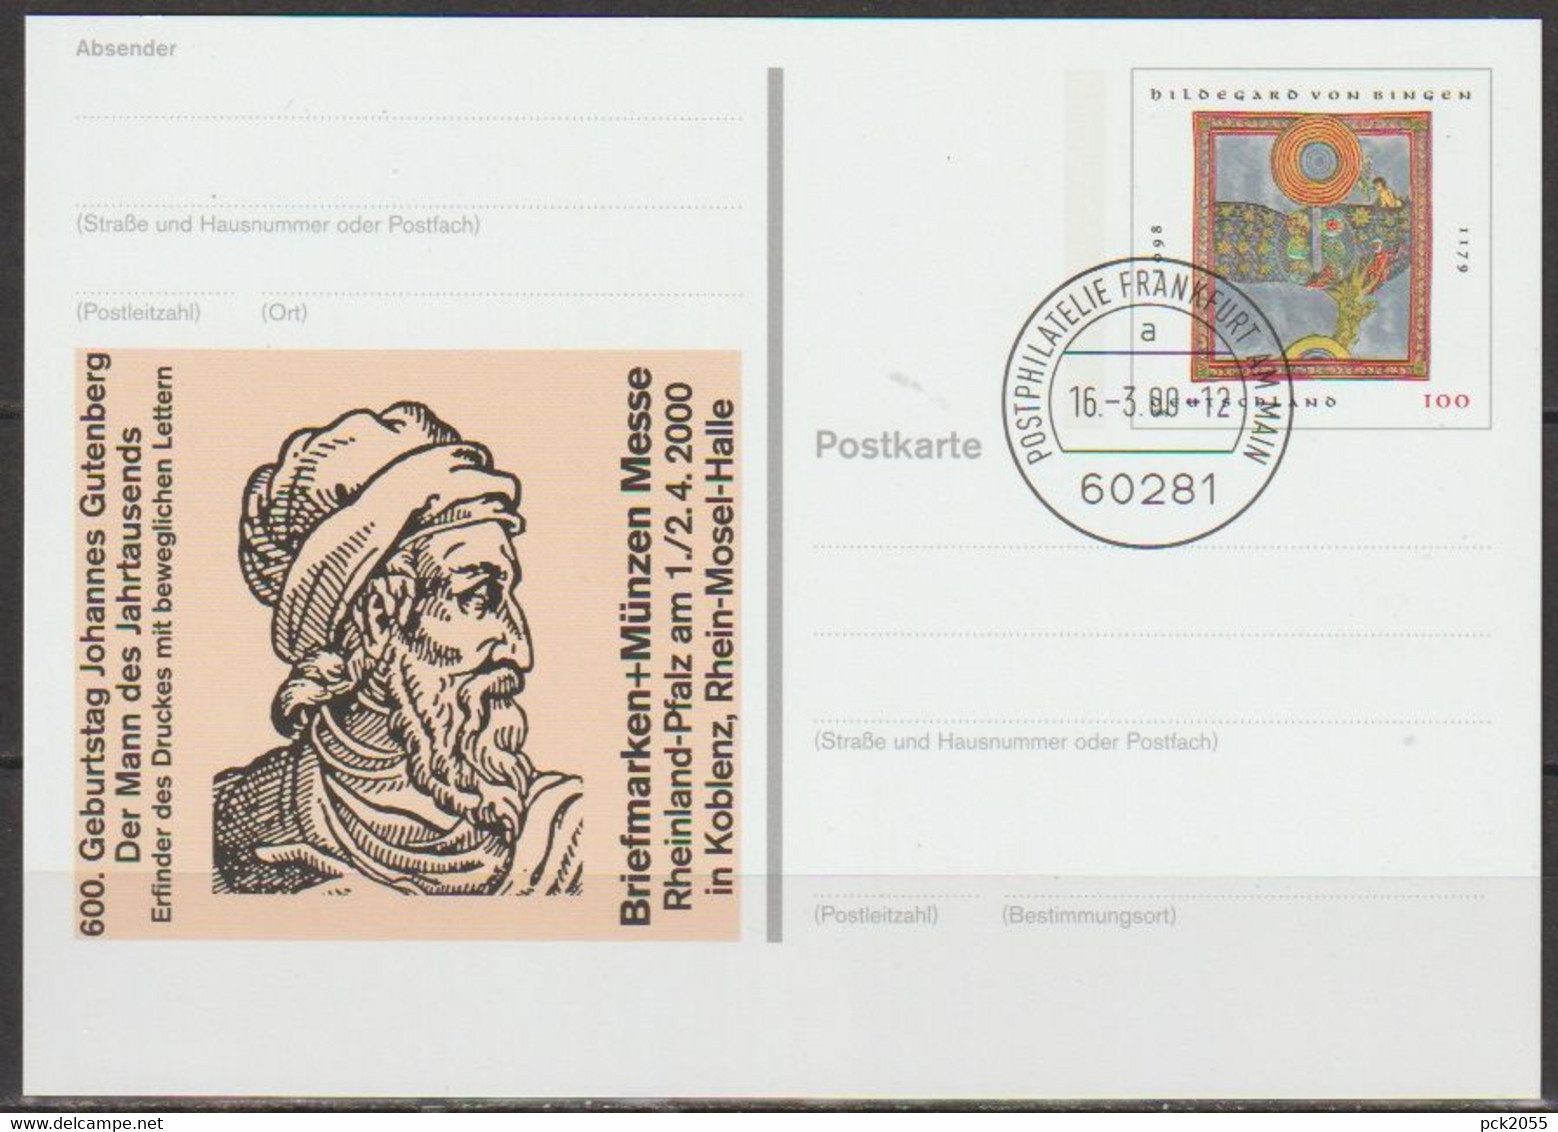 BRD Ganzsache 2000 PSo66 Münchner Briefmarkentage EST. 16.3.00 Postphilatelie Frankfurt(d3939)günstige Versandkosten - Postales - Usados